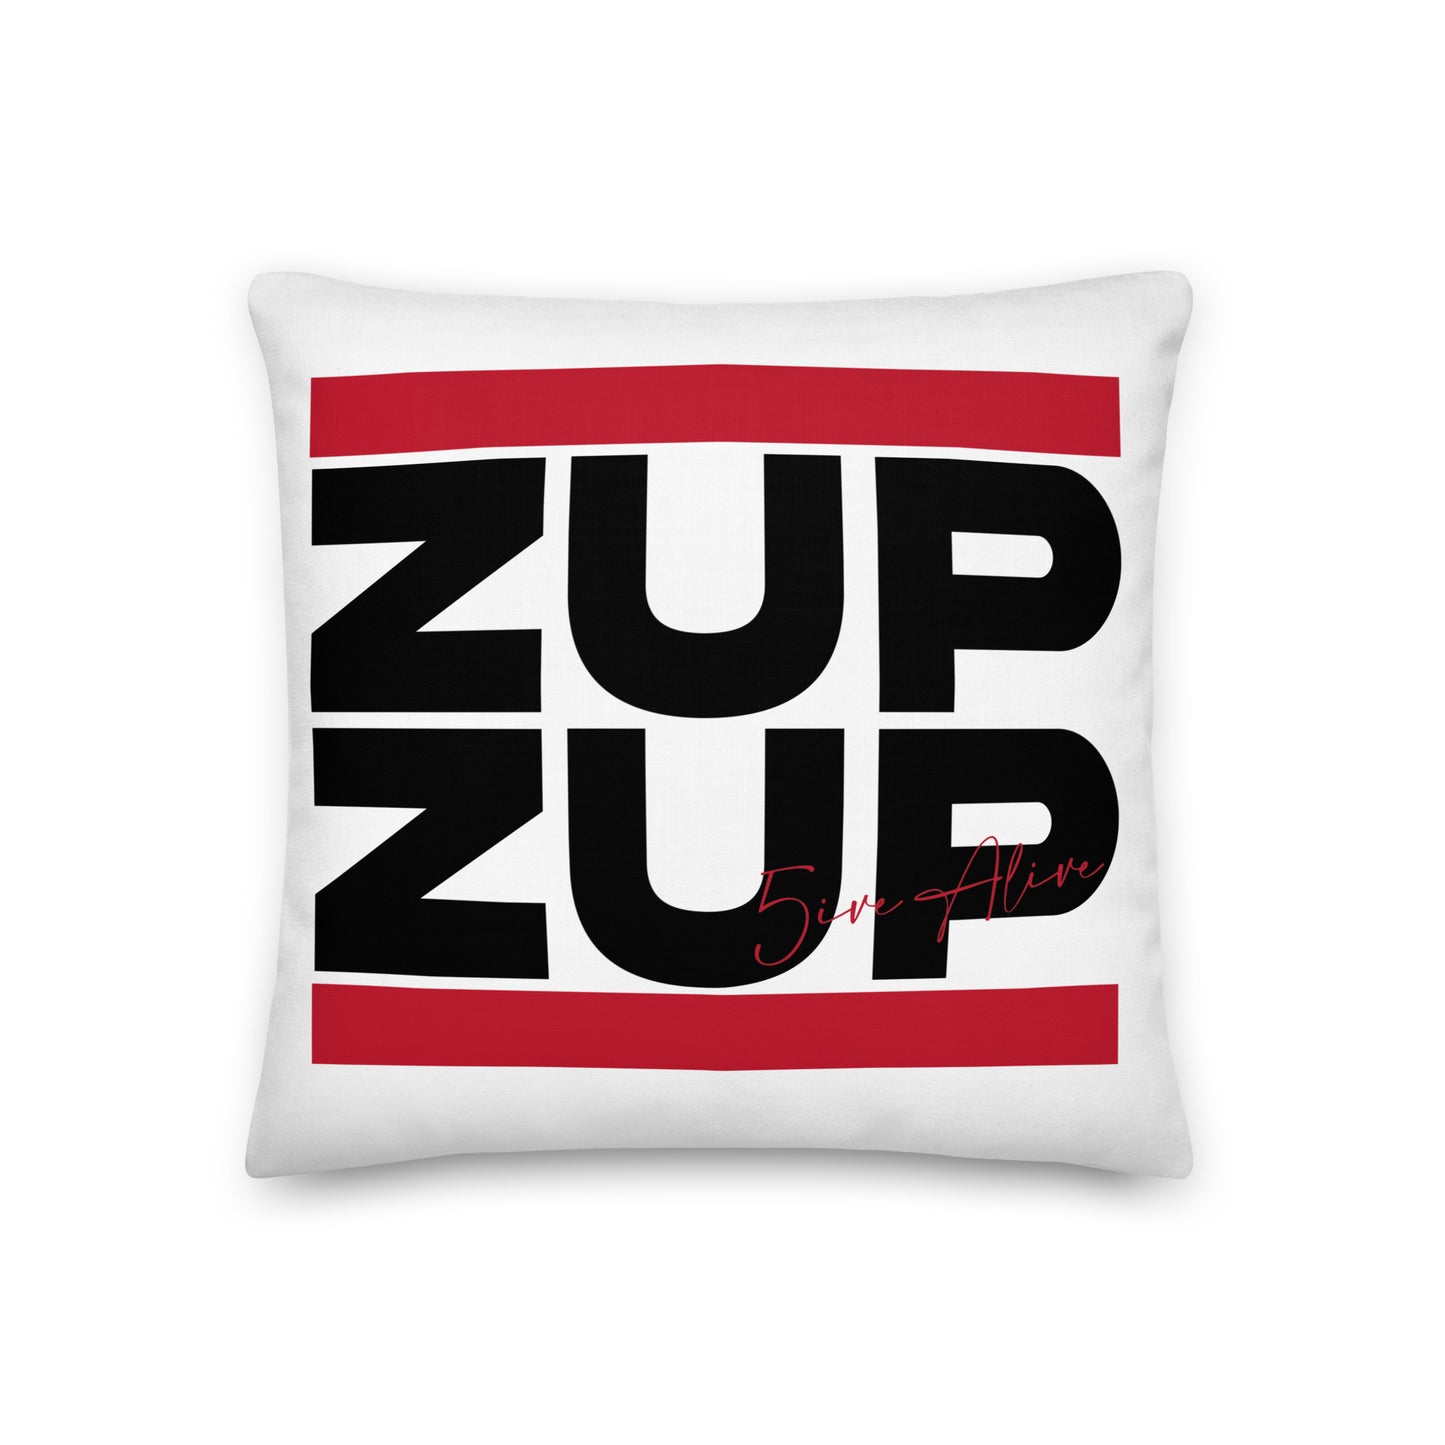 Zup Zup (Black Text) Premium Pillow